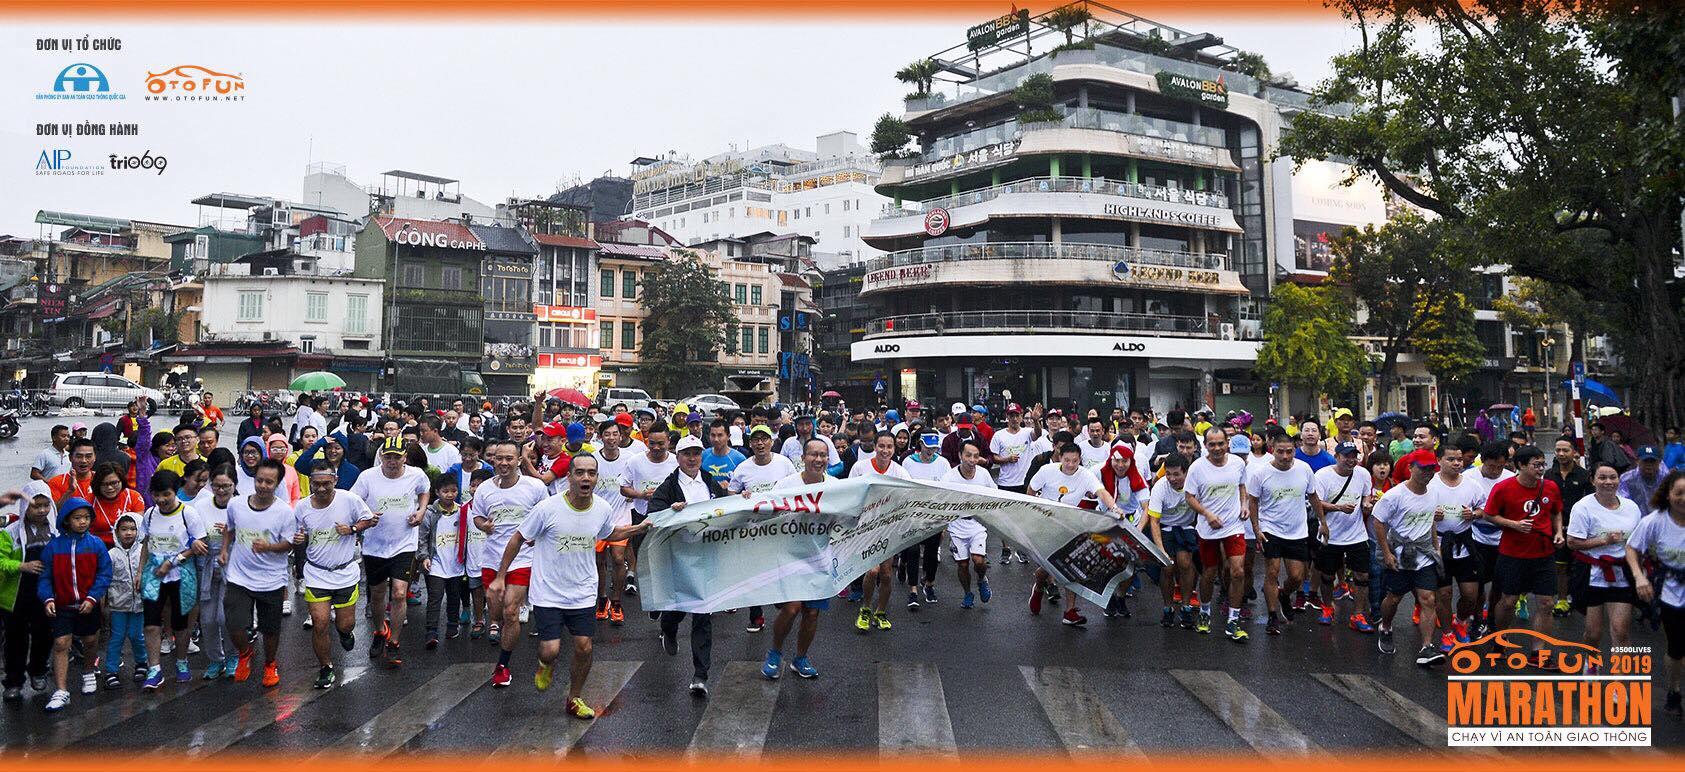 Otofun Marathon - Chạy vì an toàn giao thông